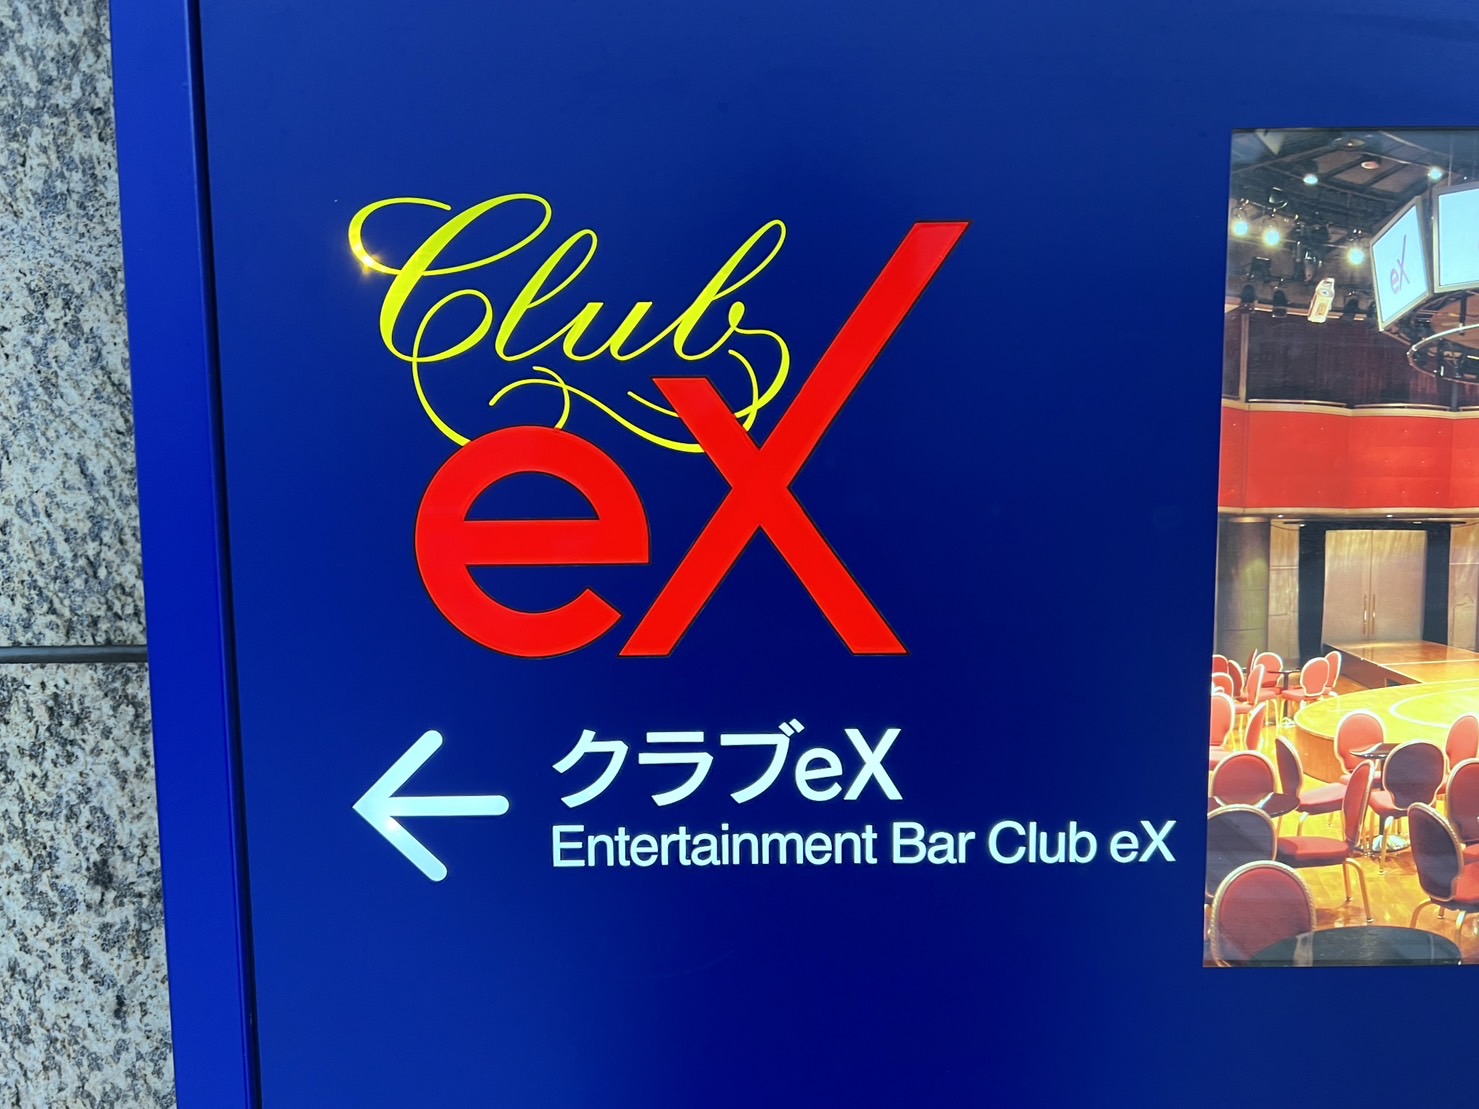 稲葉浩志がライブを行う「Club-eX」の看板の写真